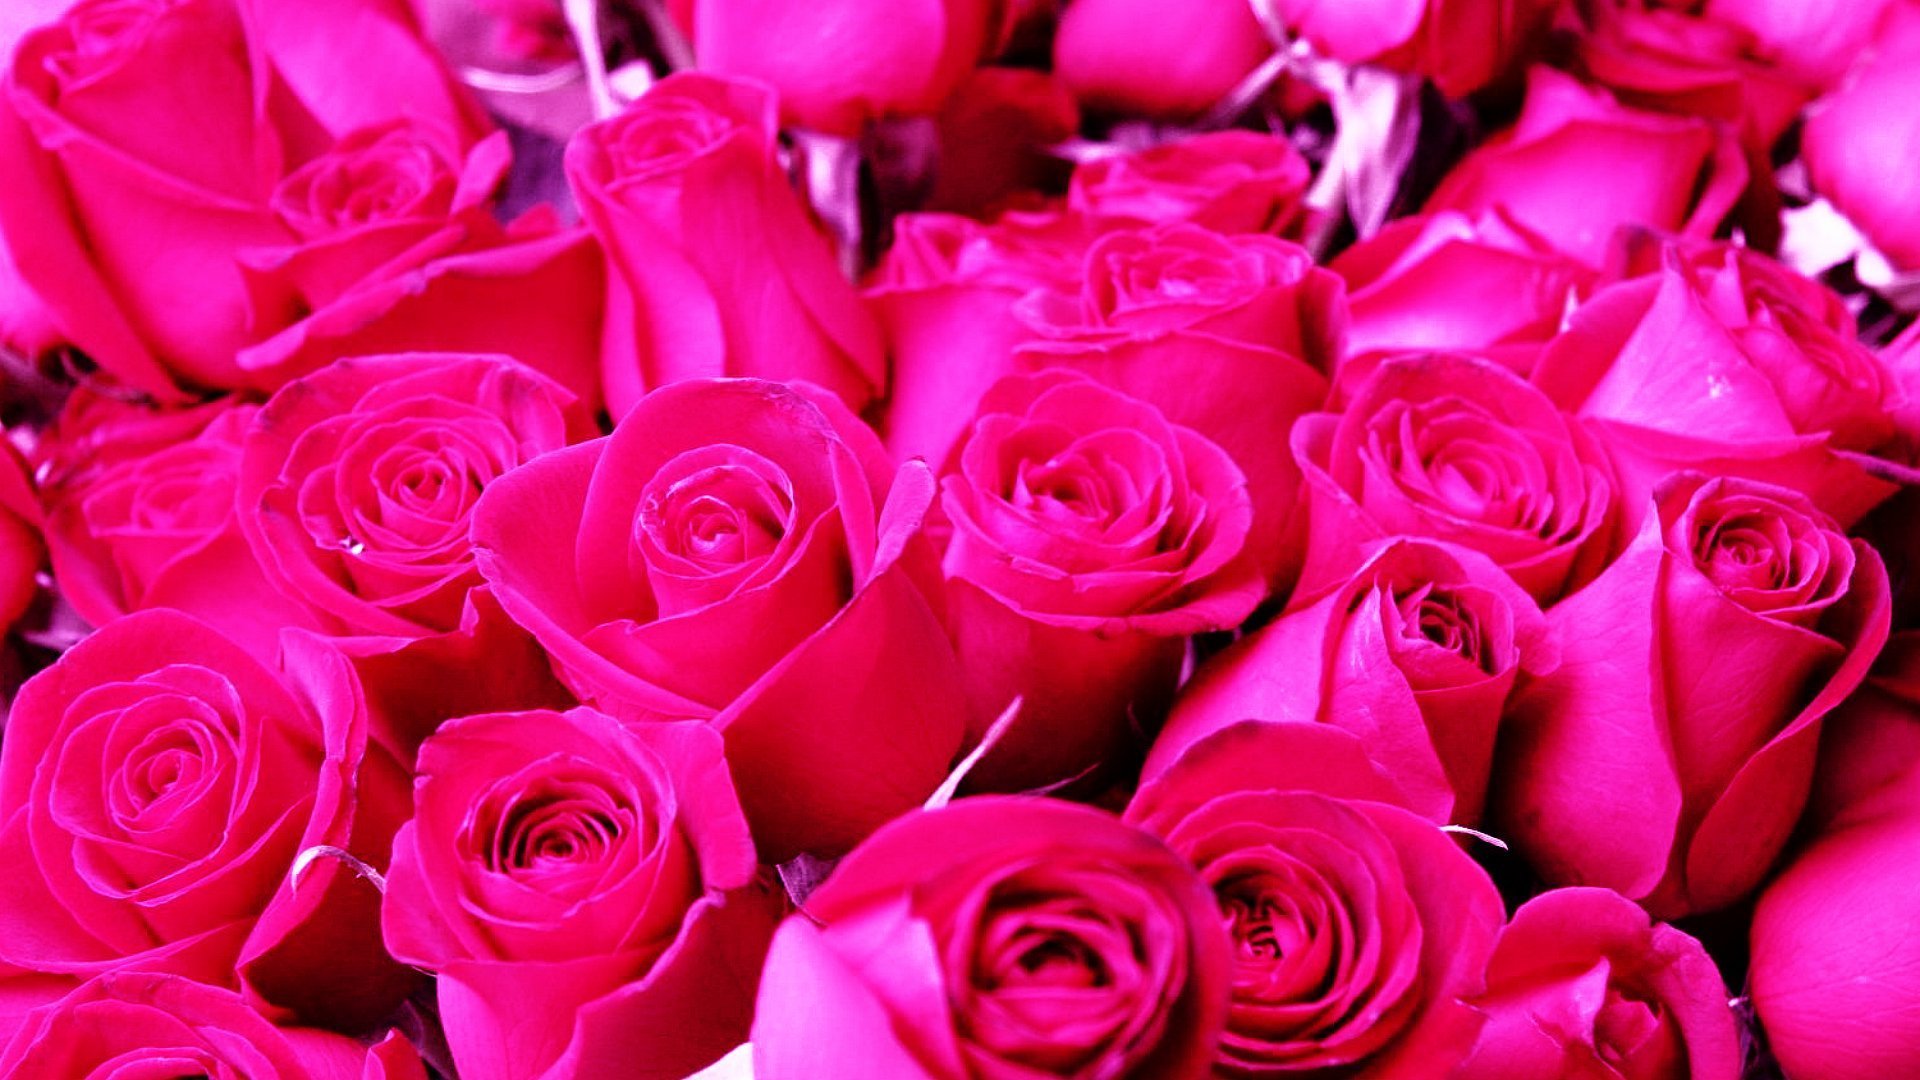 Роз оо. Красивые розы. Розовые розы. Ярко розовые розы.